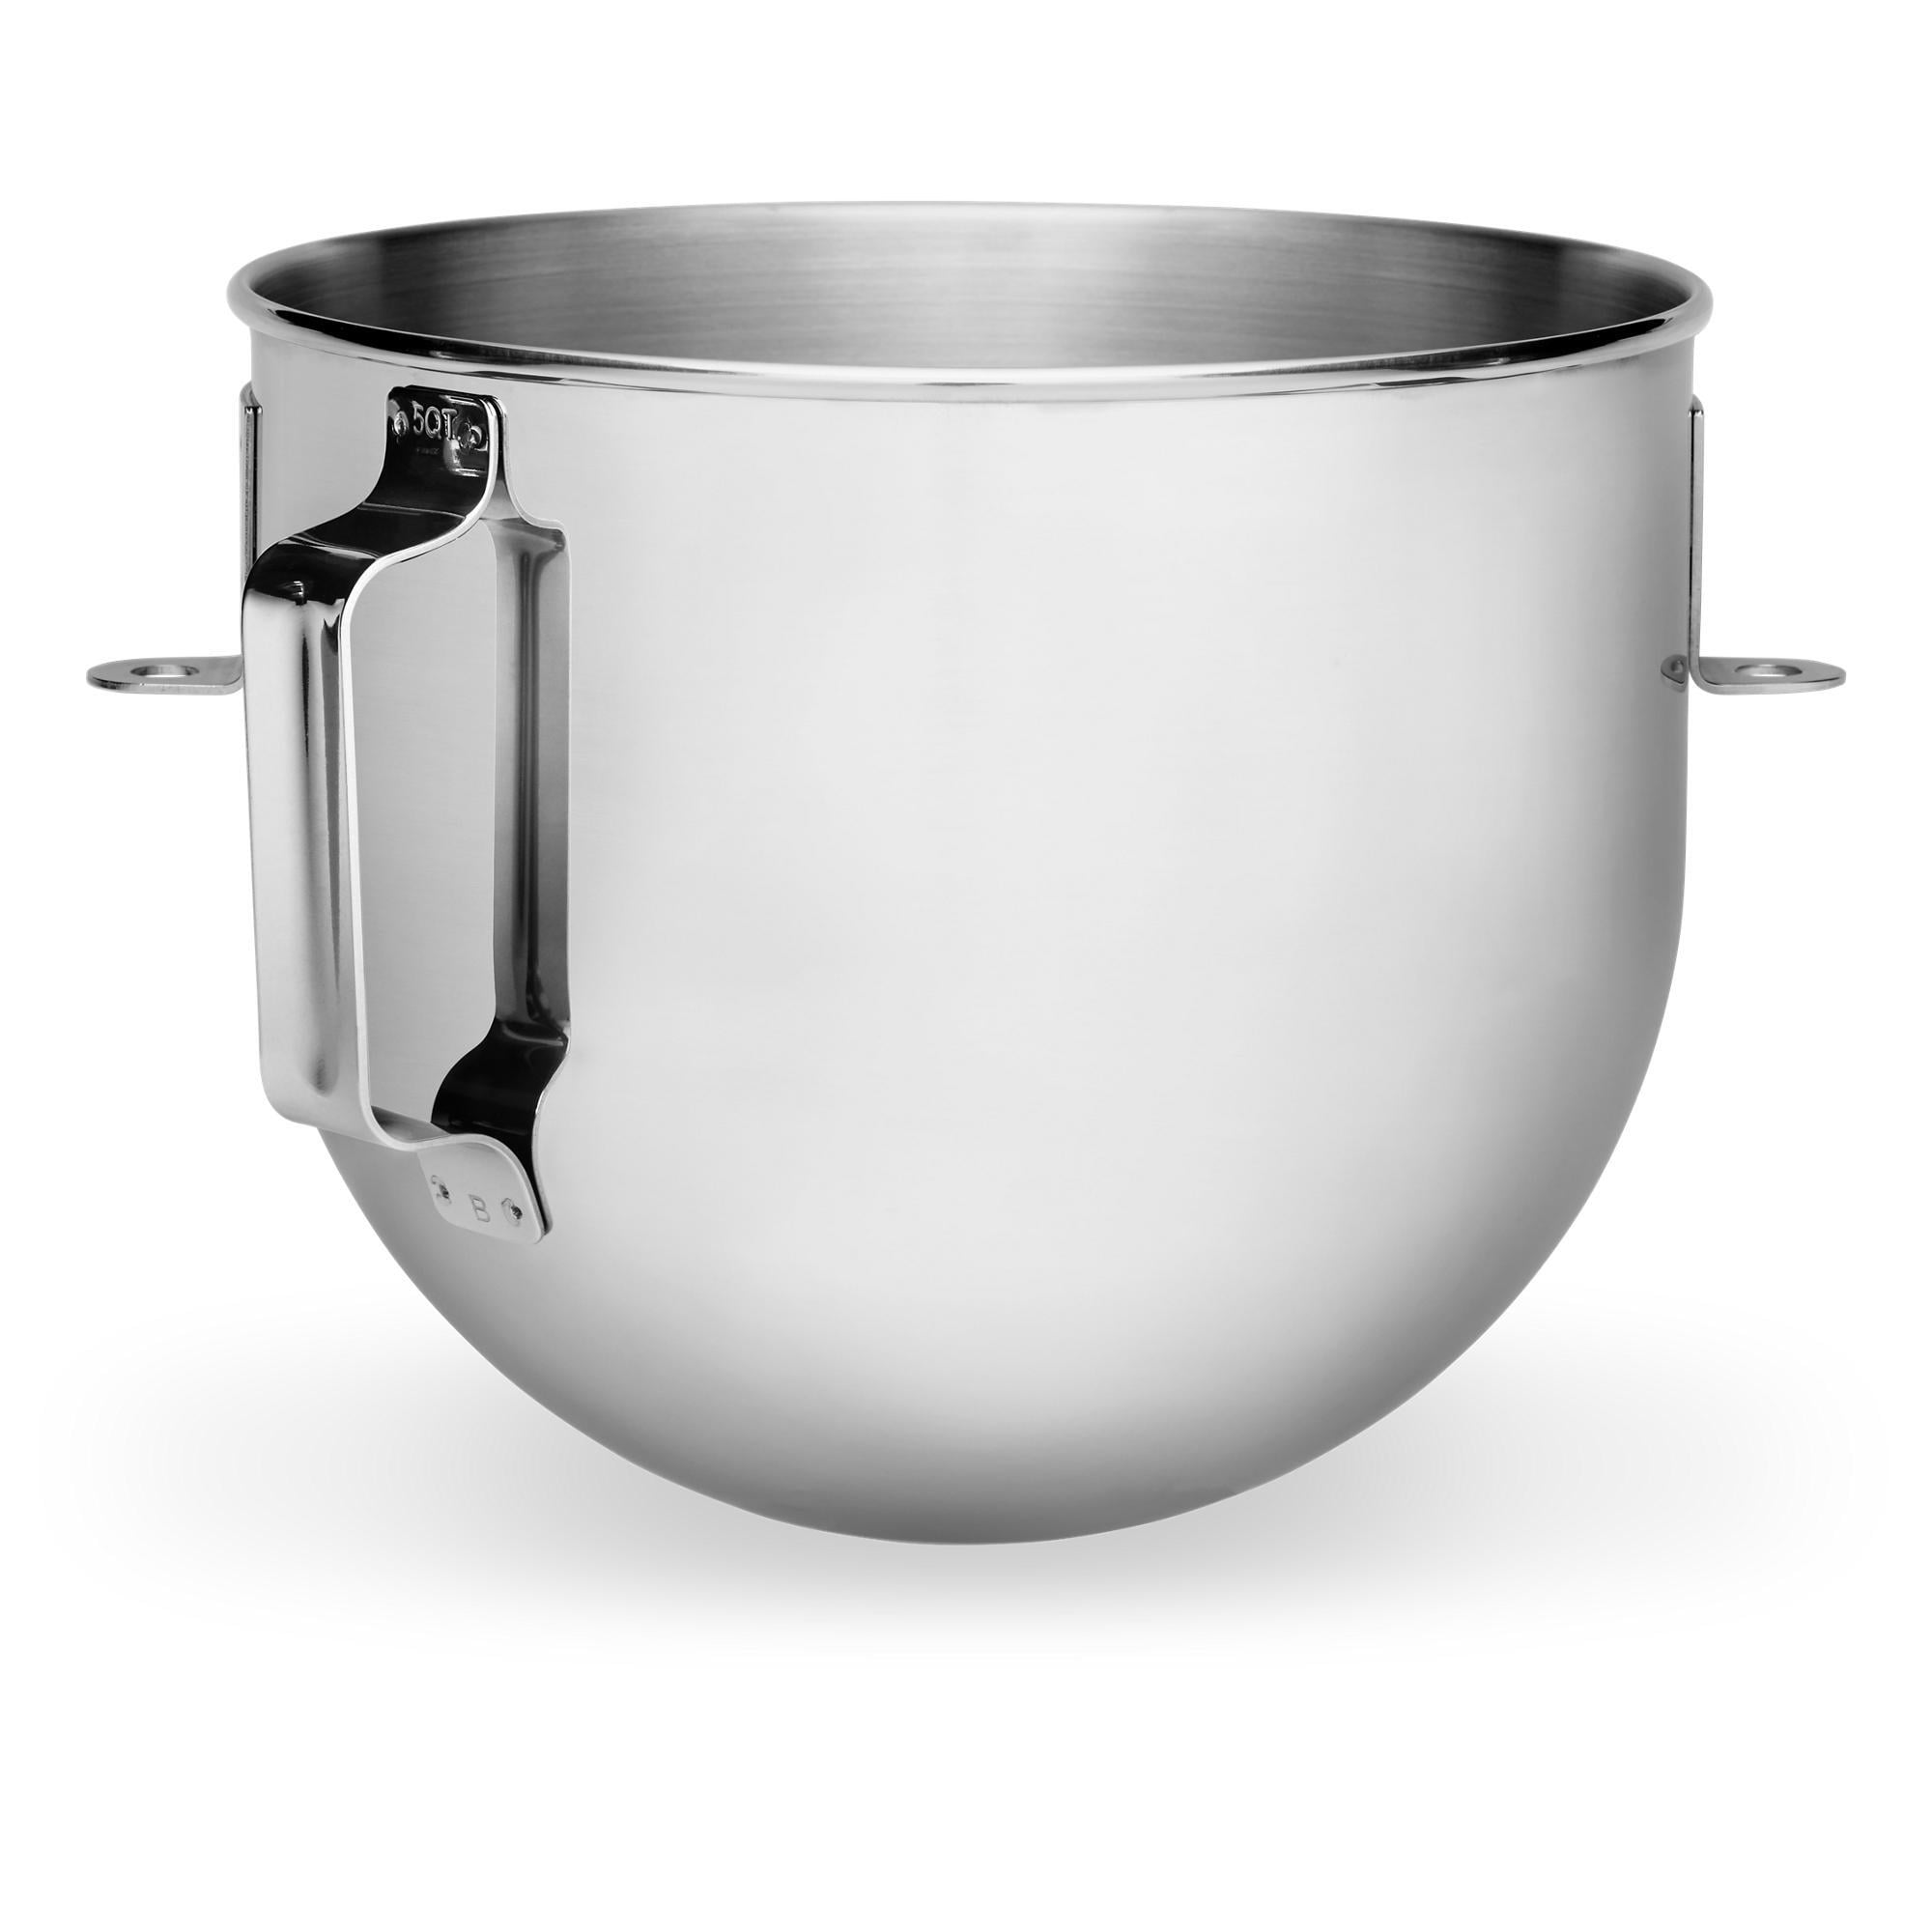 Mixer 5qt S.S. Bowl w/Handle for KitchenAid, K5THSBP, W10245282